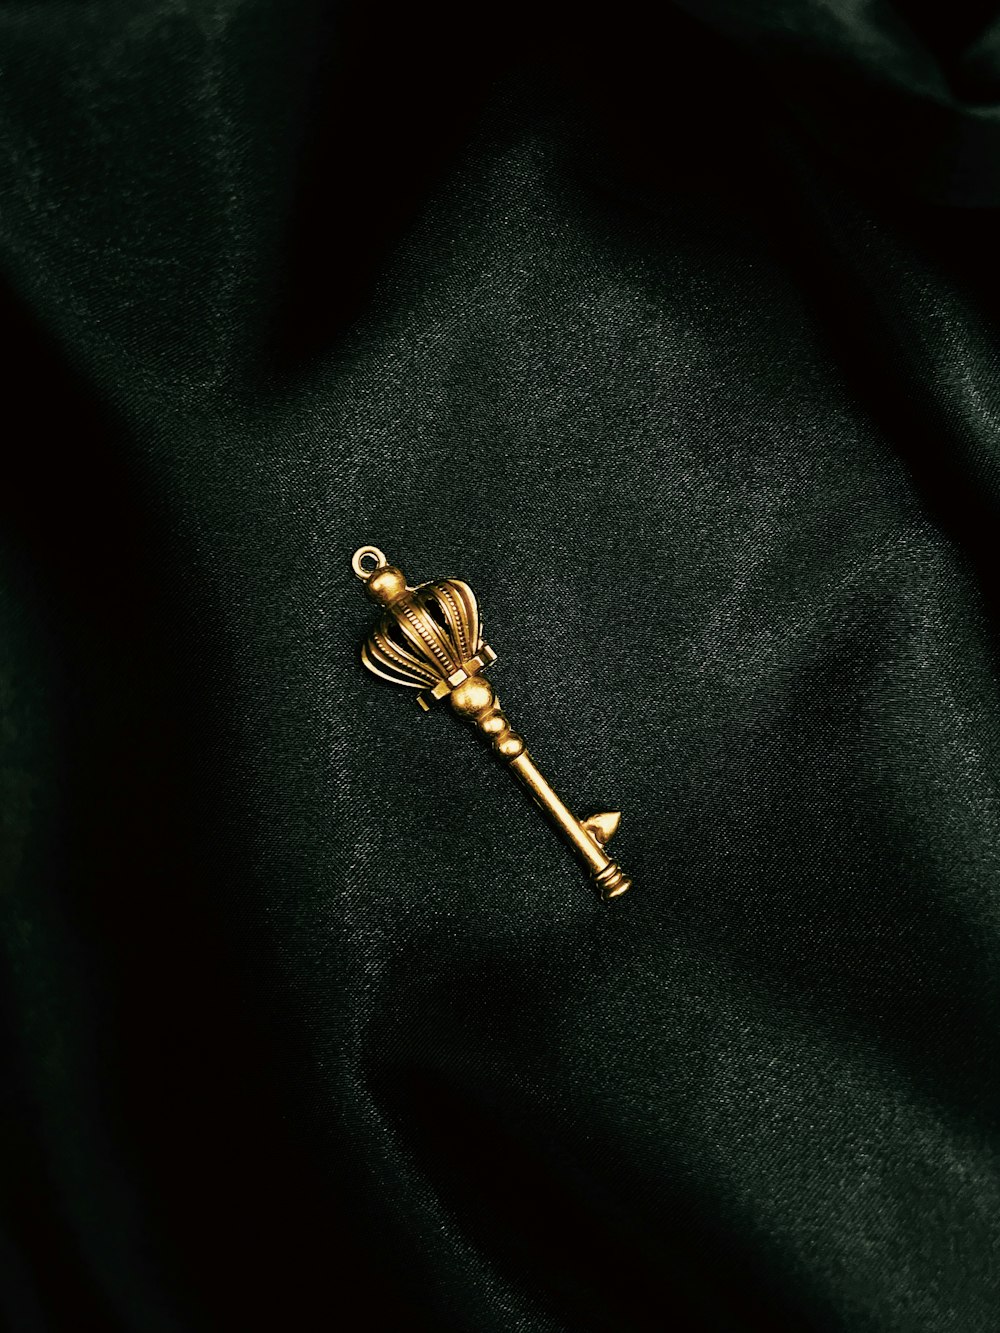 a gold key on a black surface